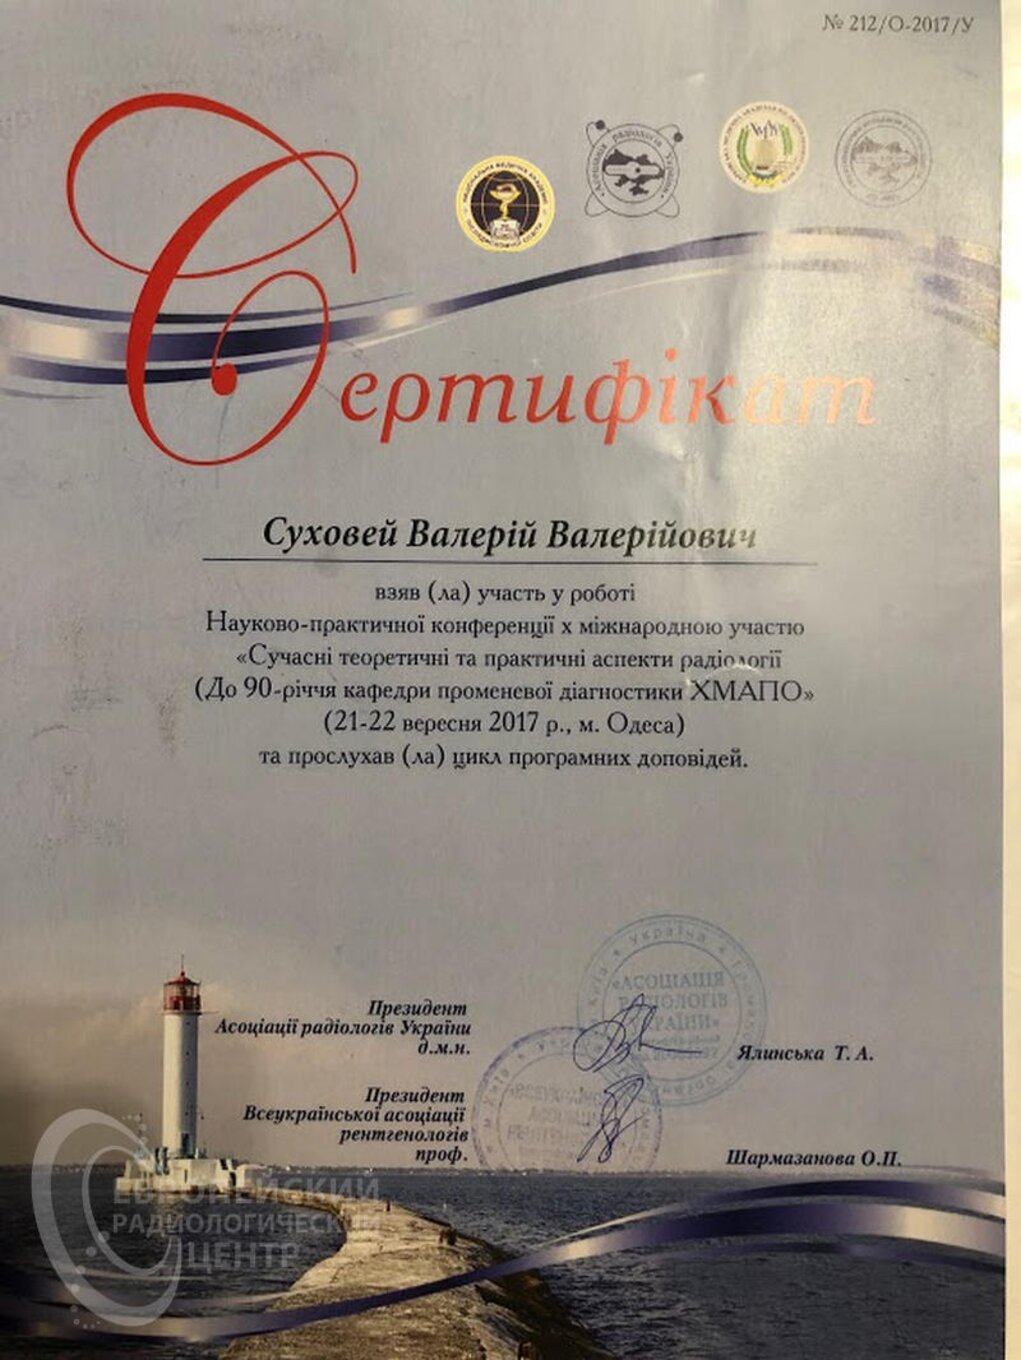 certificates/suhovej-valerij-valerijovich/erc-suhovej-certificates-02.jpg